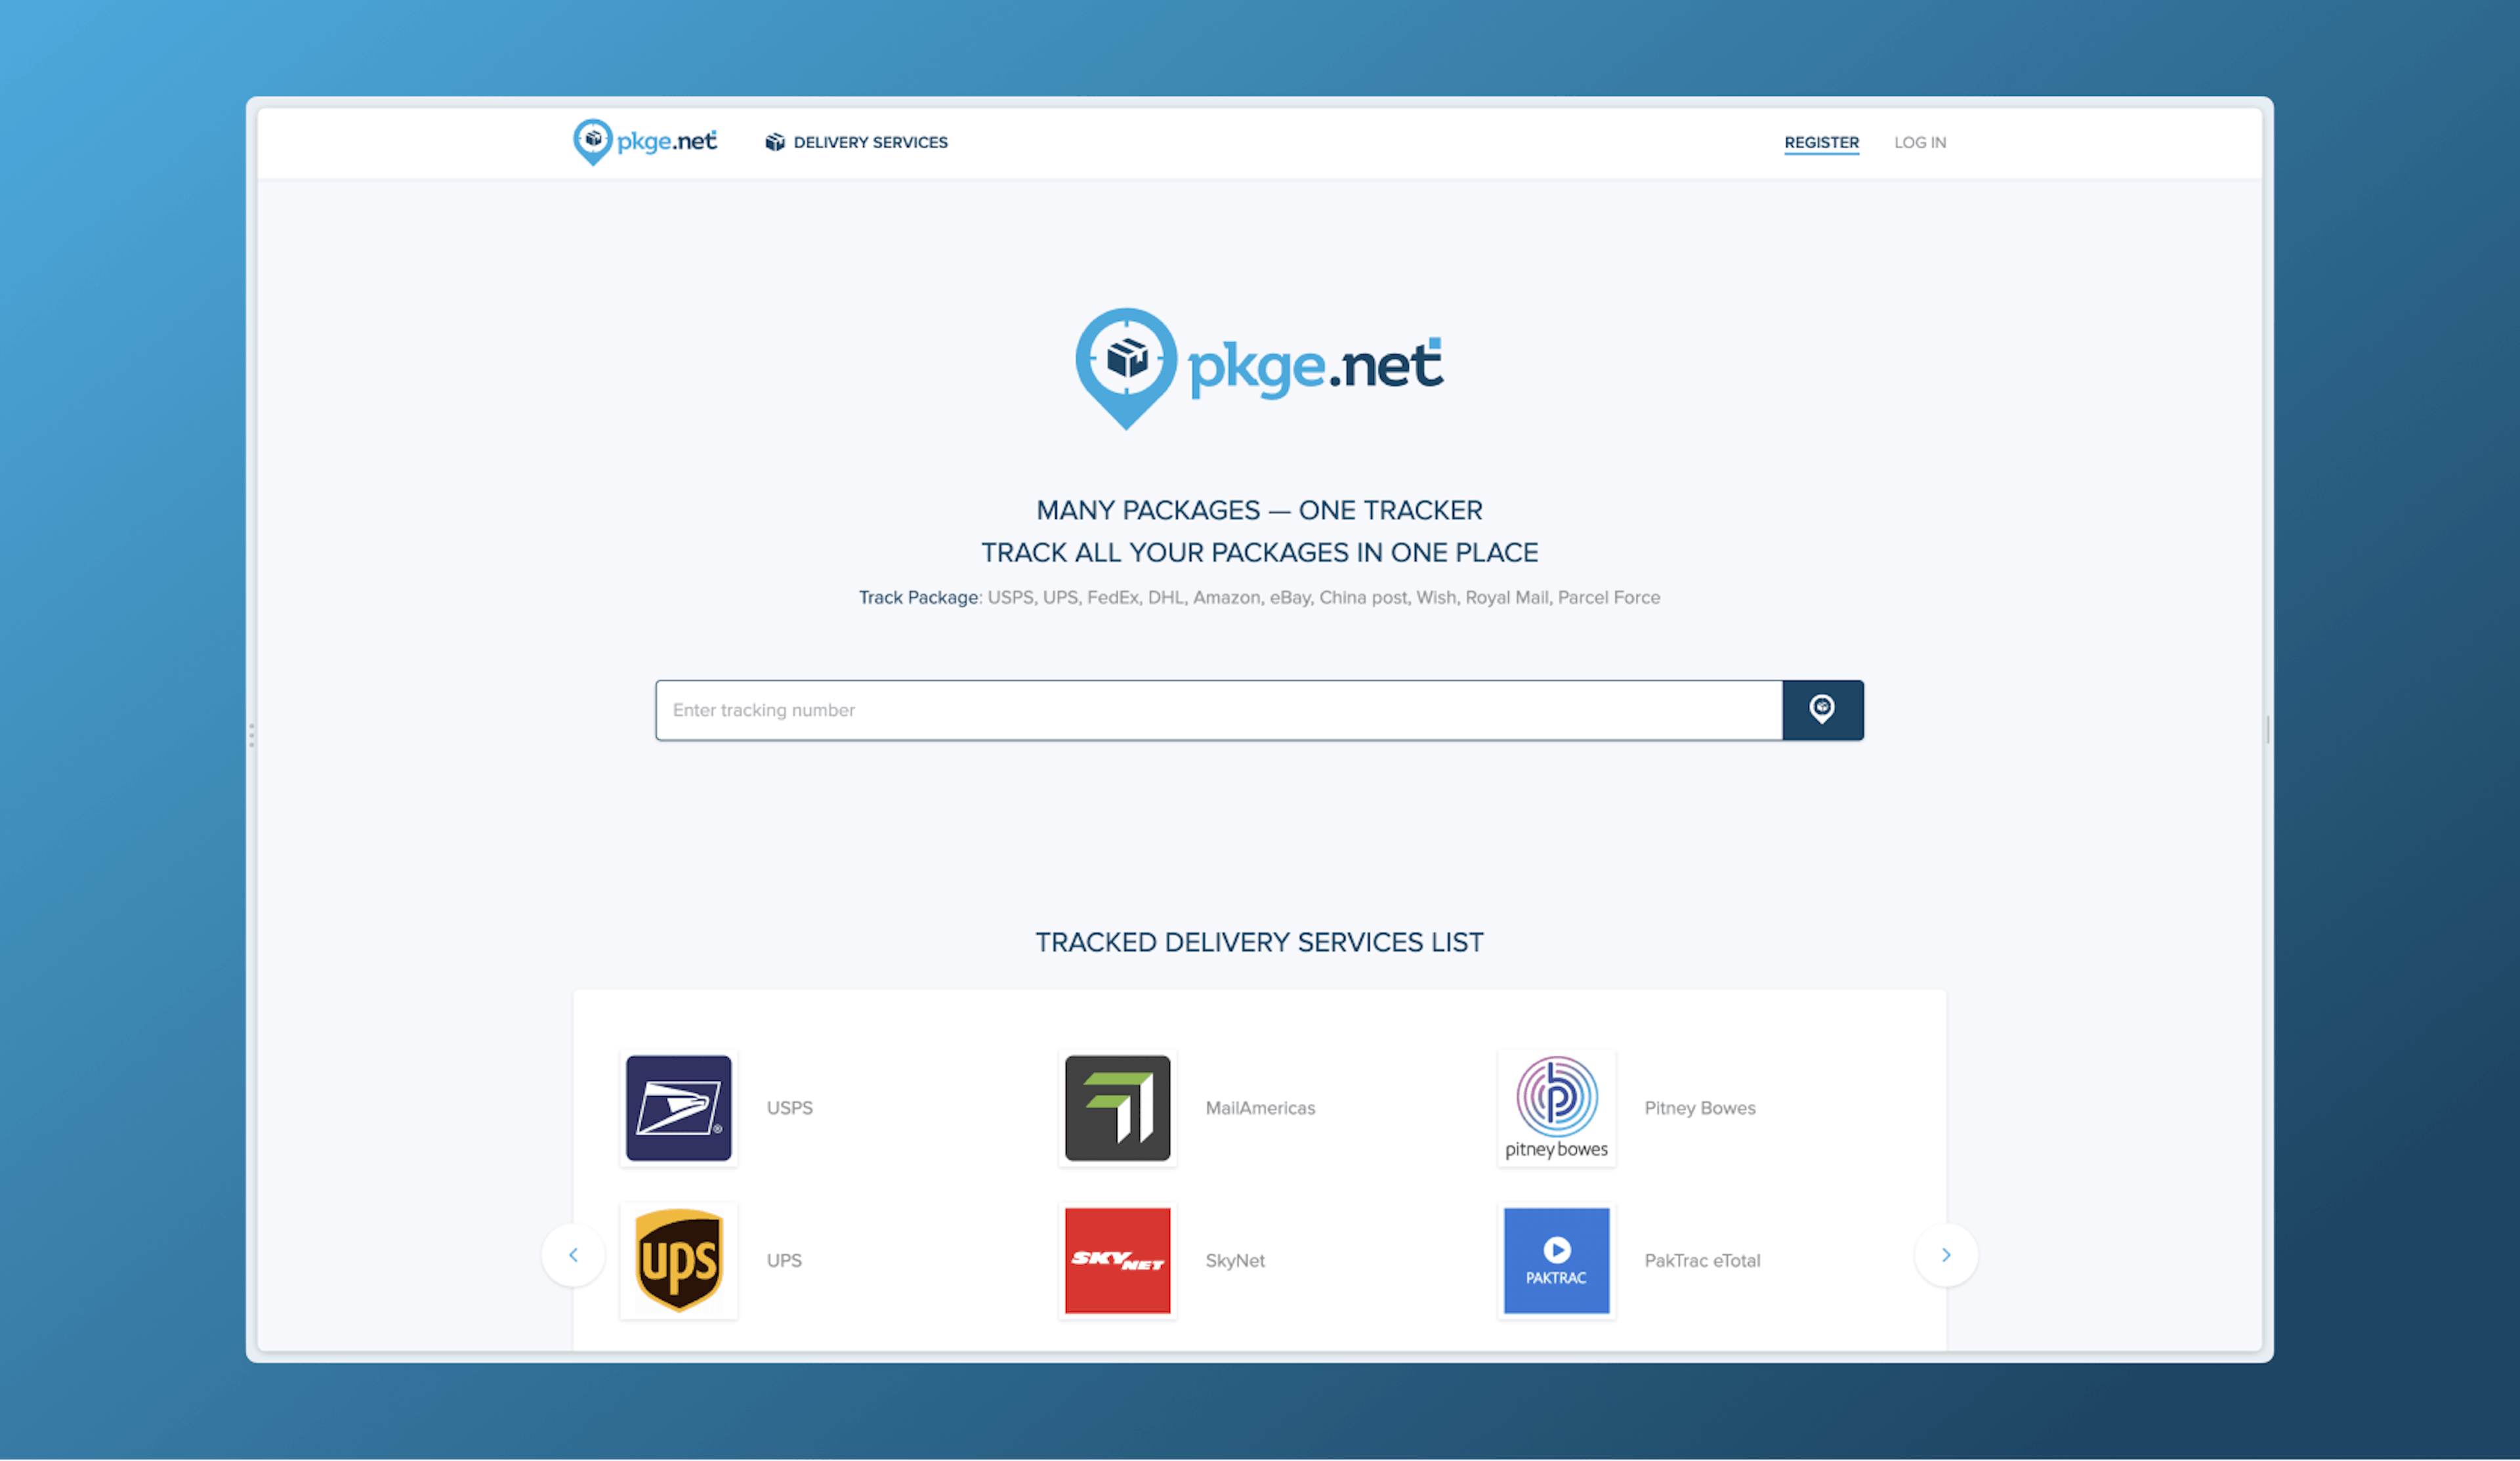 Pkge.net website homepage